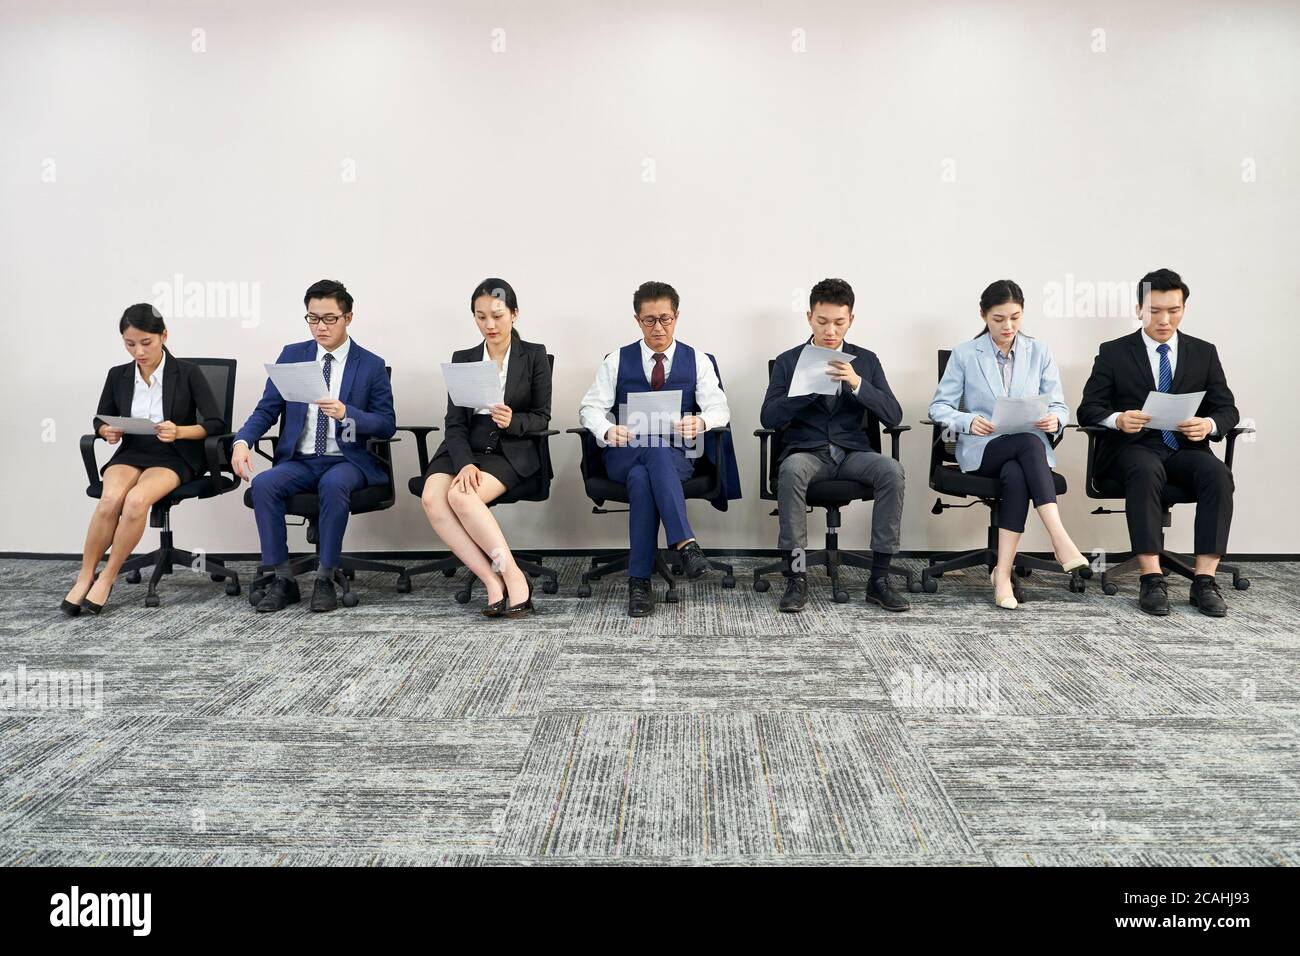 groupe de gens d'affaires asiatiques, hommes et femmes, attendant en file d'attente pour un entretien d'emploi Banque D'Images